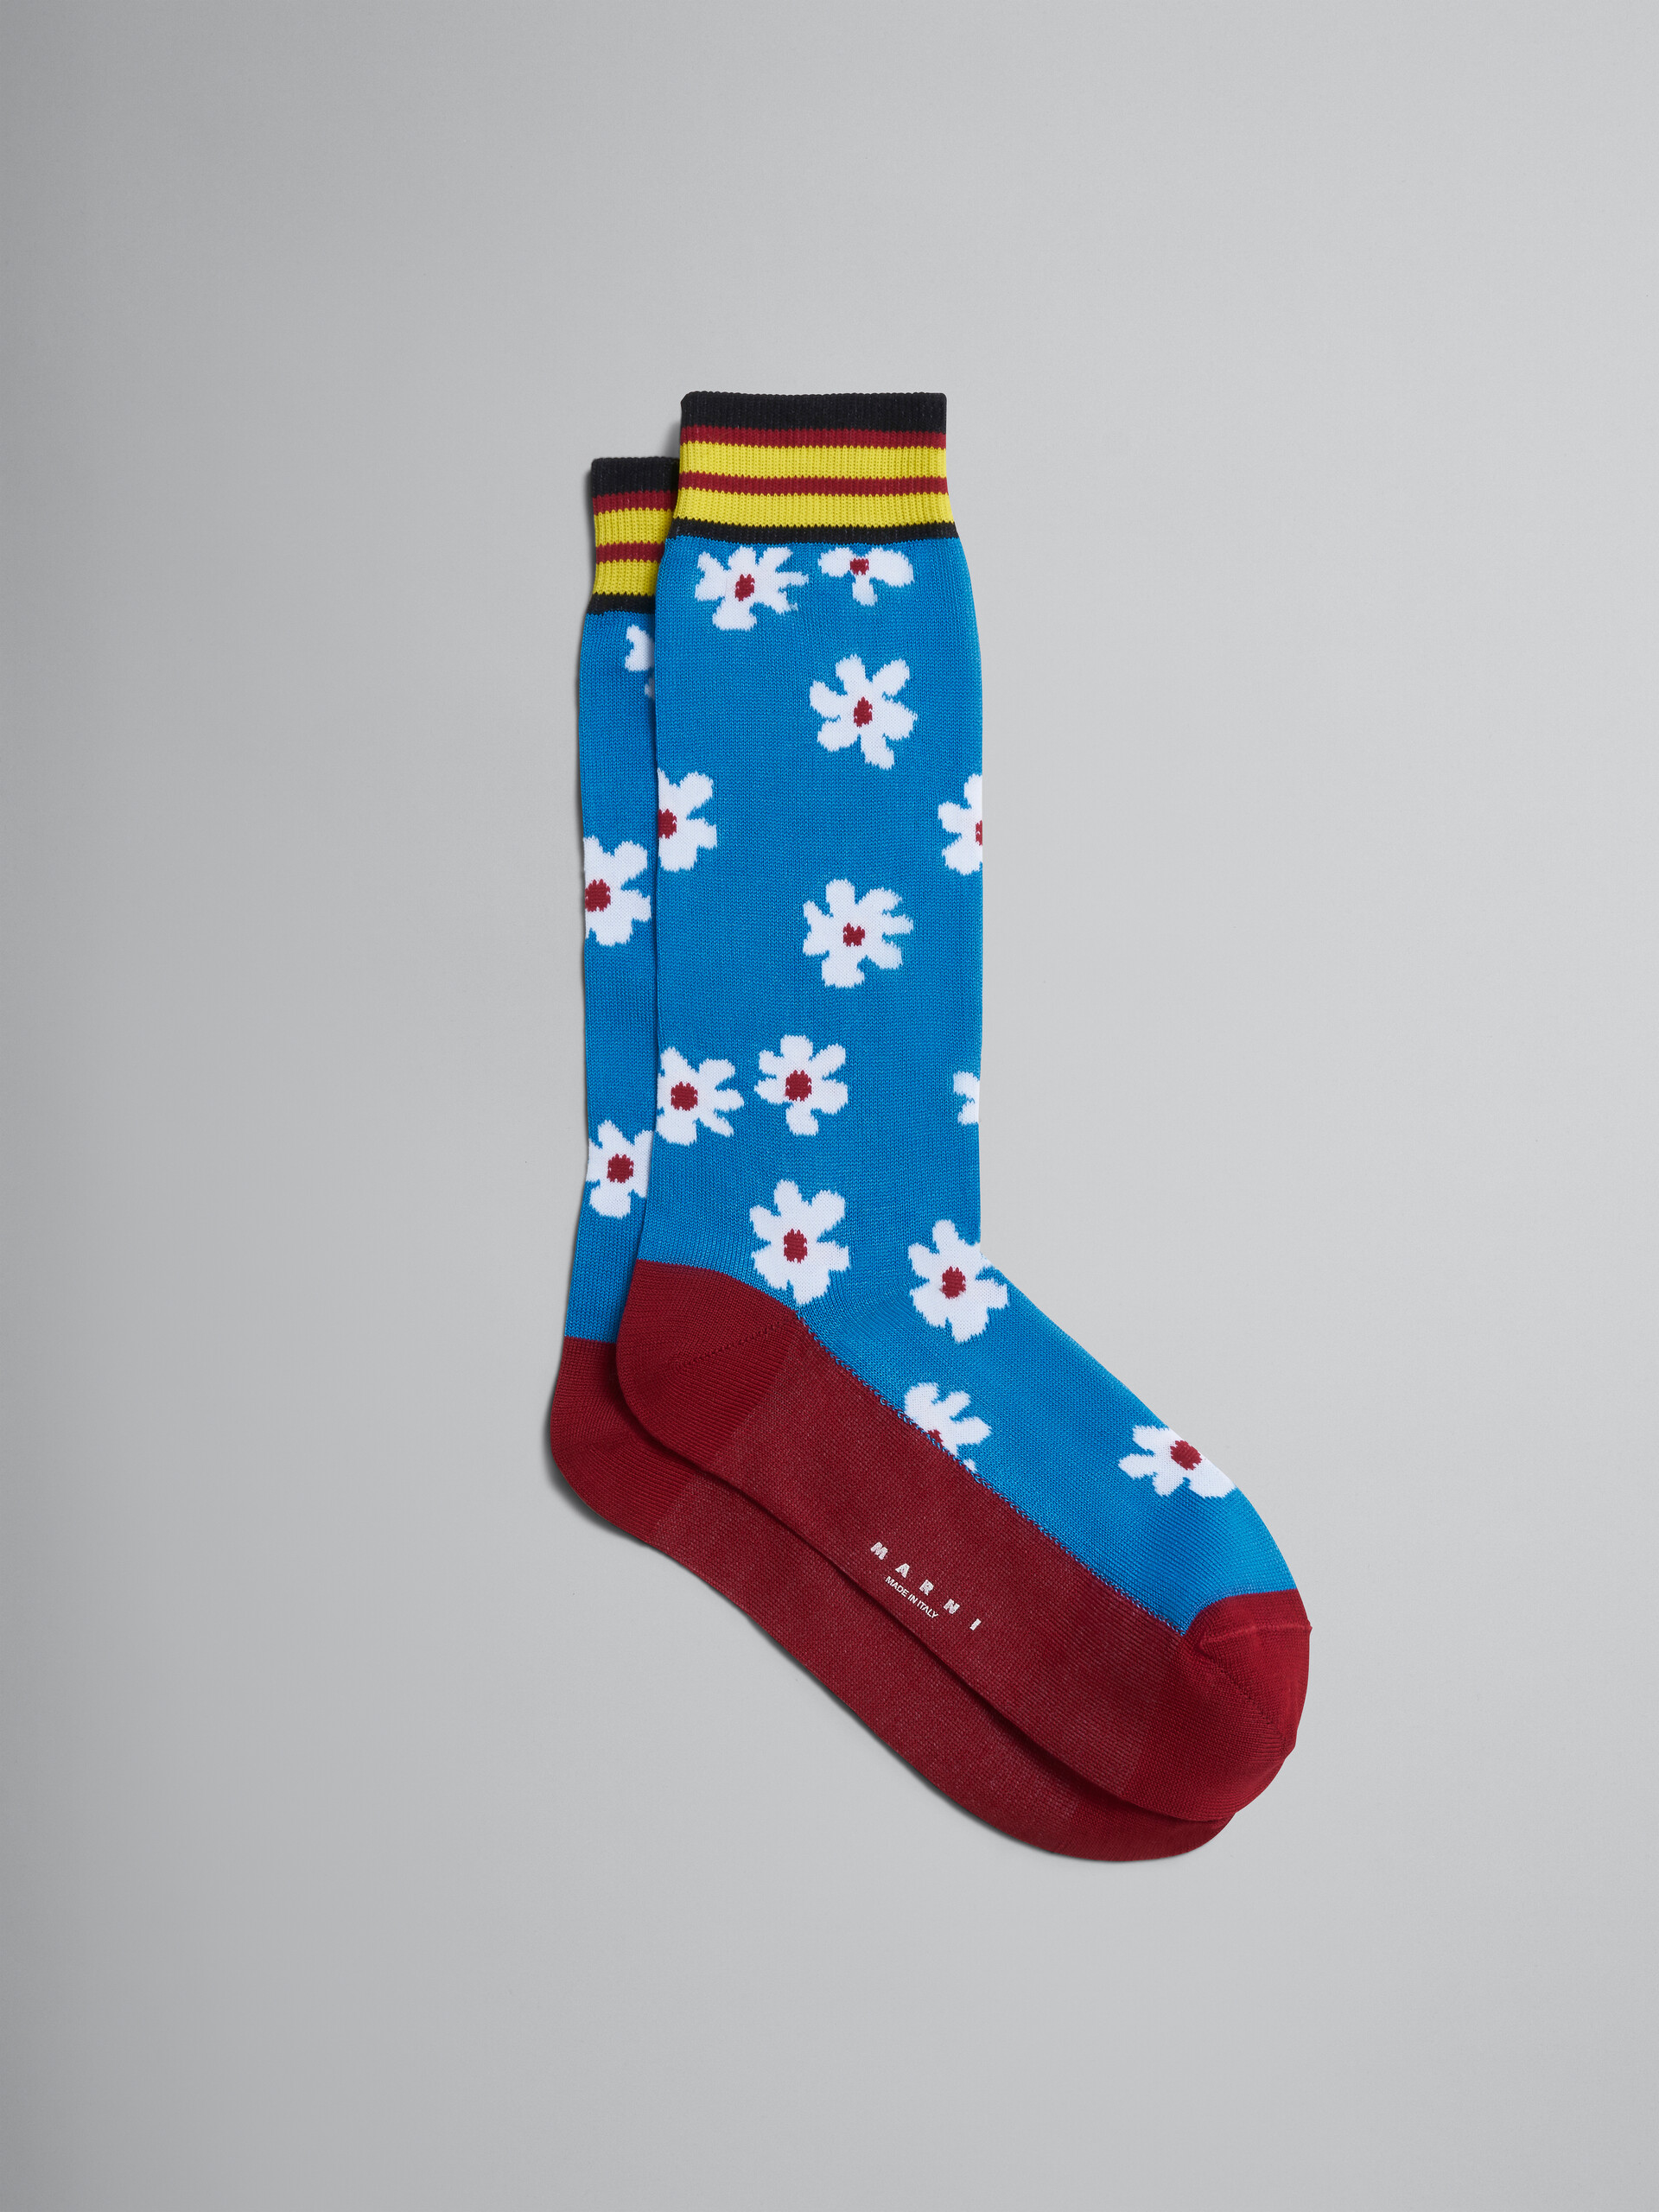 Blue Daisy cotton and nylon sock - Socks - Image 1